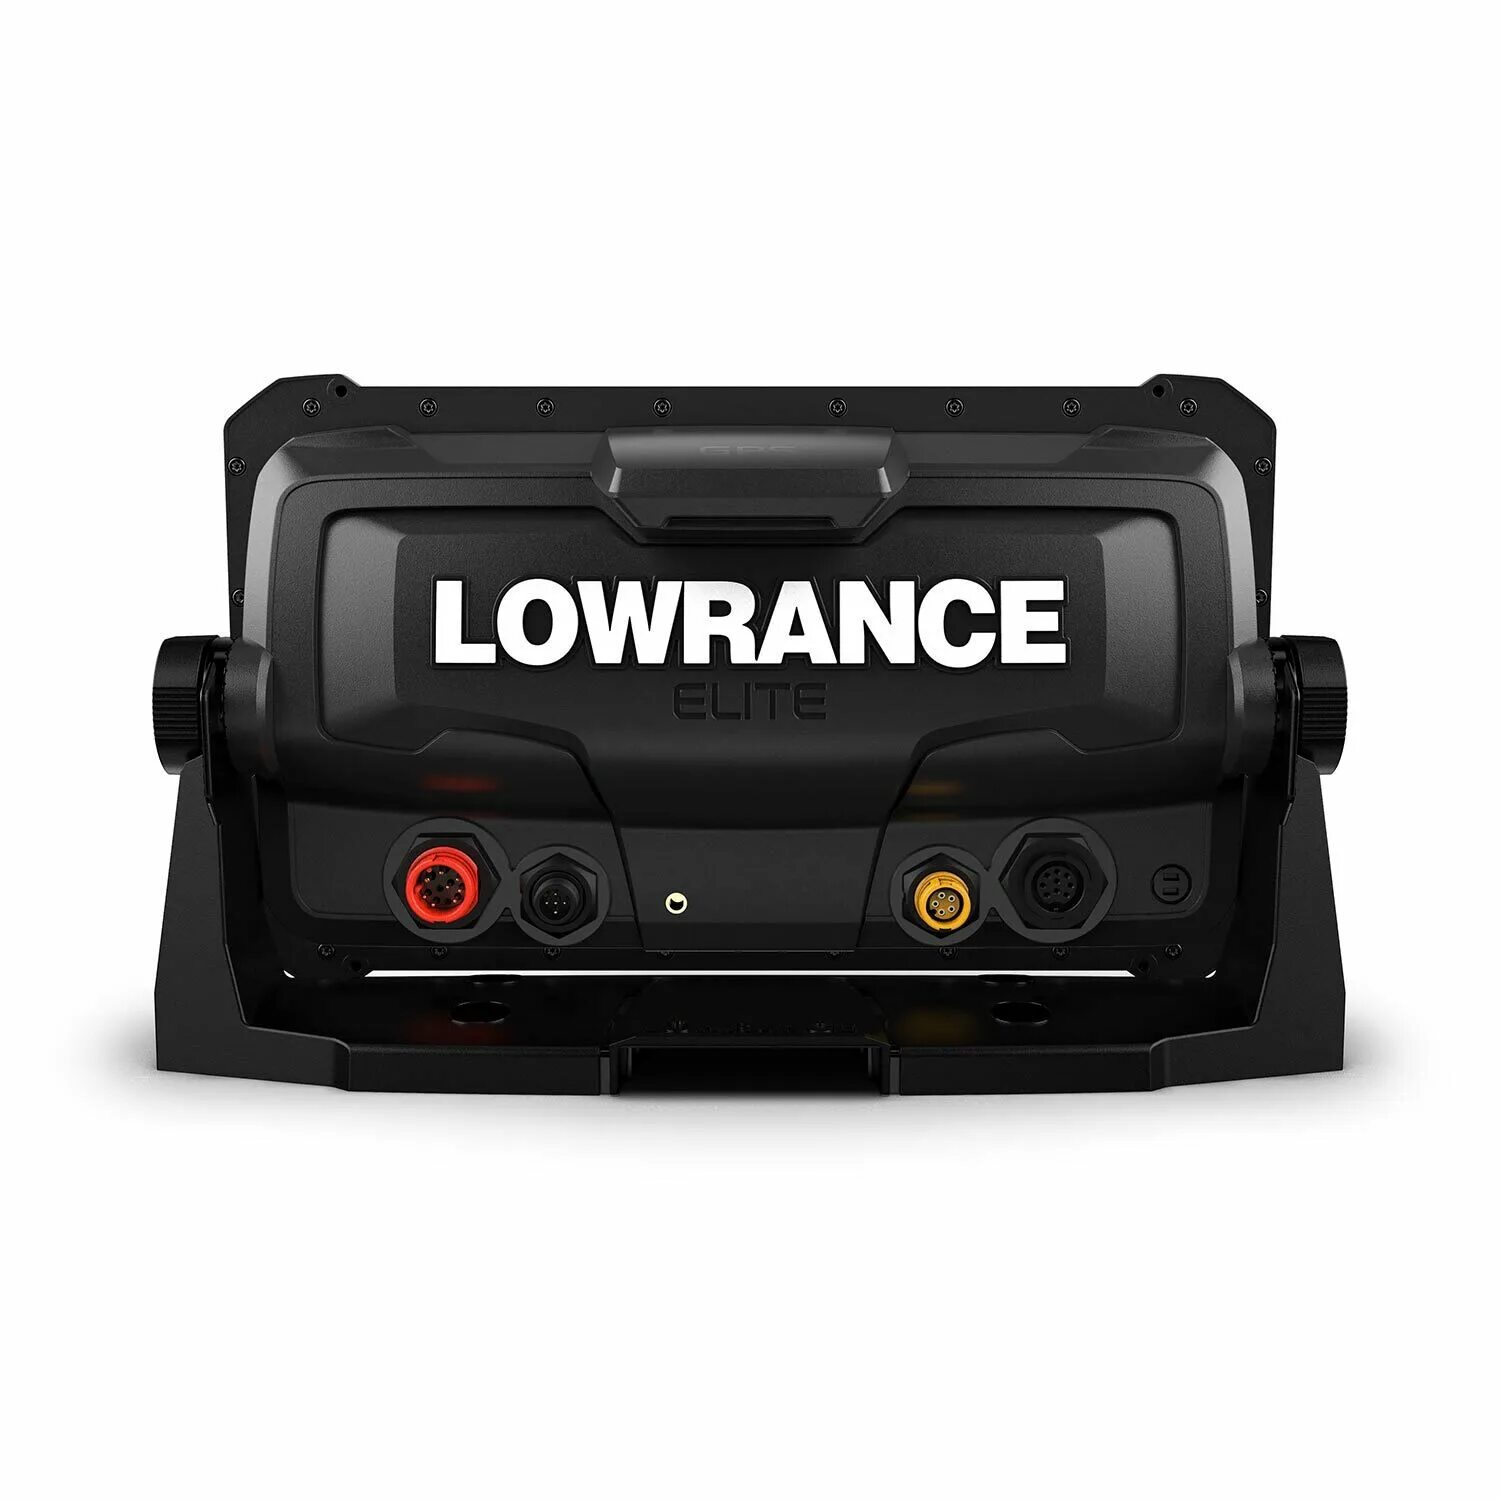 Лоуренс элит 9 fs. Lowrance Elite 7 FS. Lowrance Elite FS 9 С датчиком Active Imaging 3-in-1. Лоуренс эхолот 9 FS. Lowrance Elite FS.